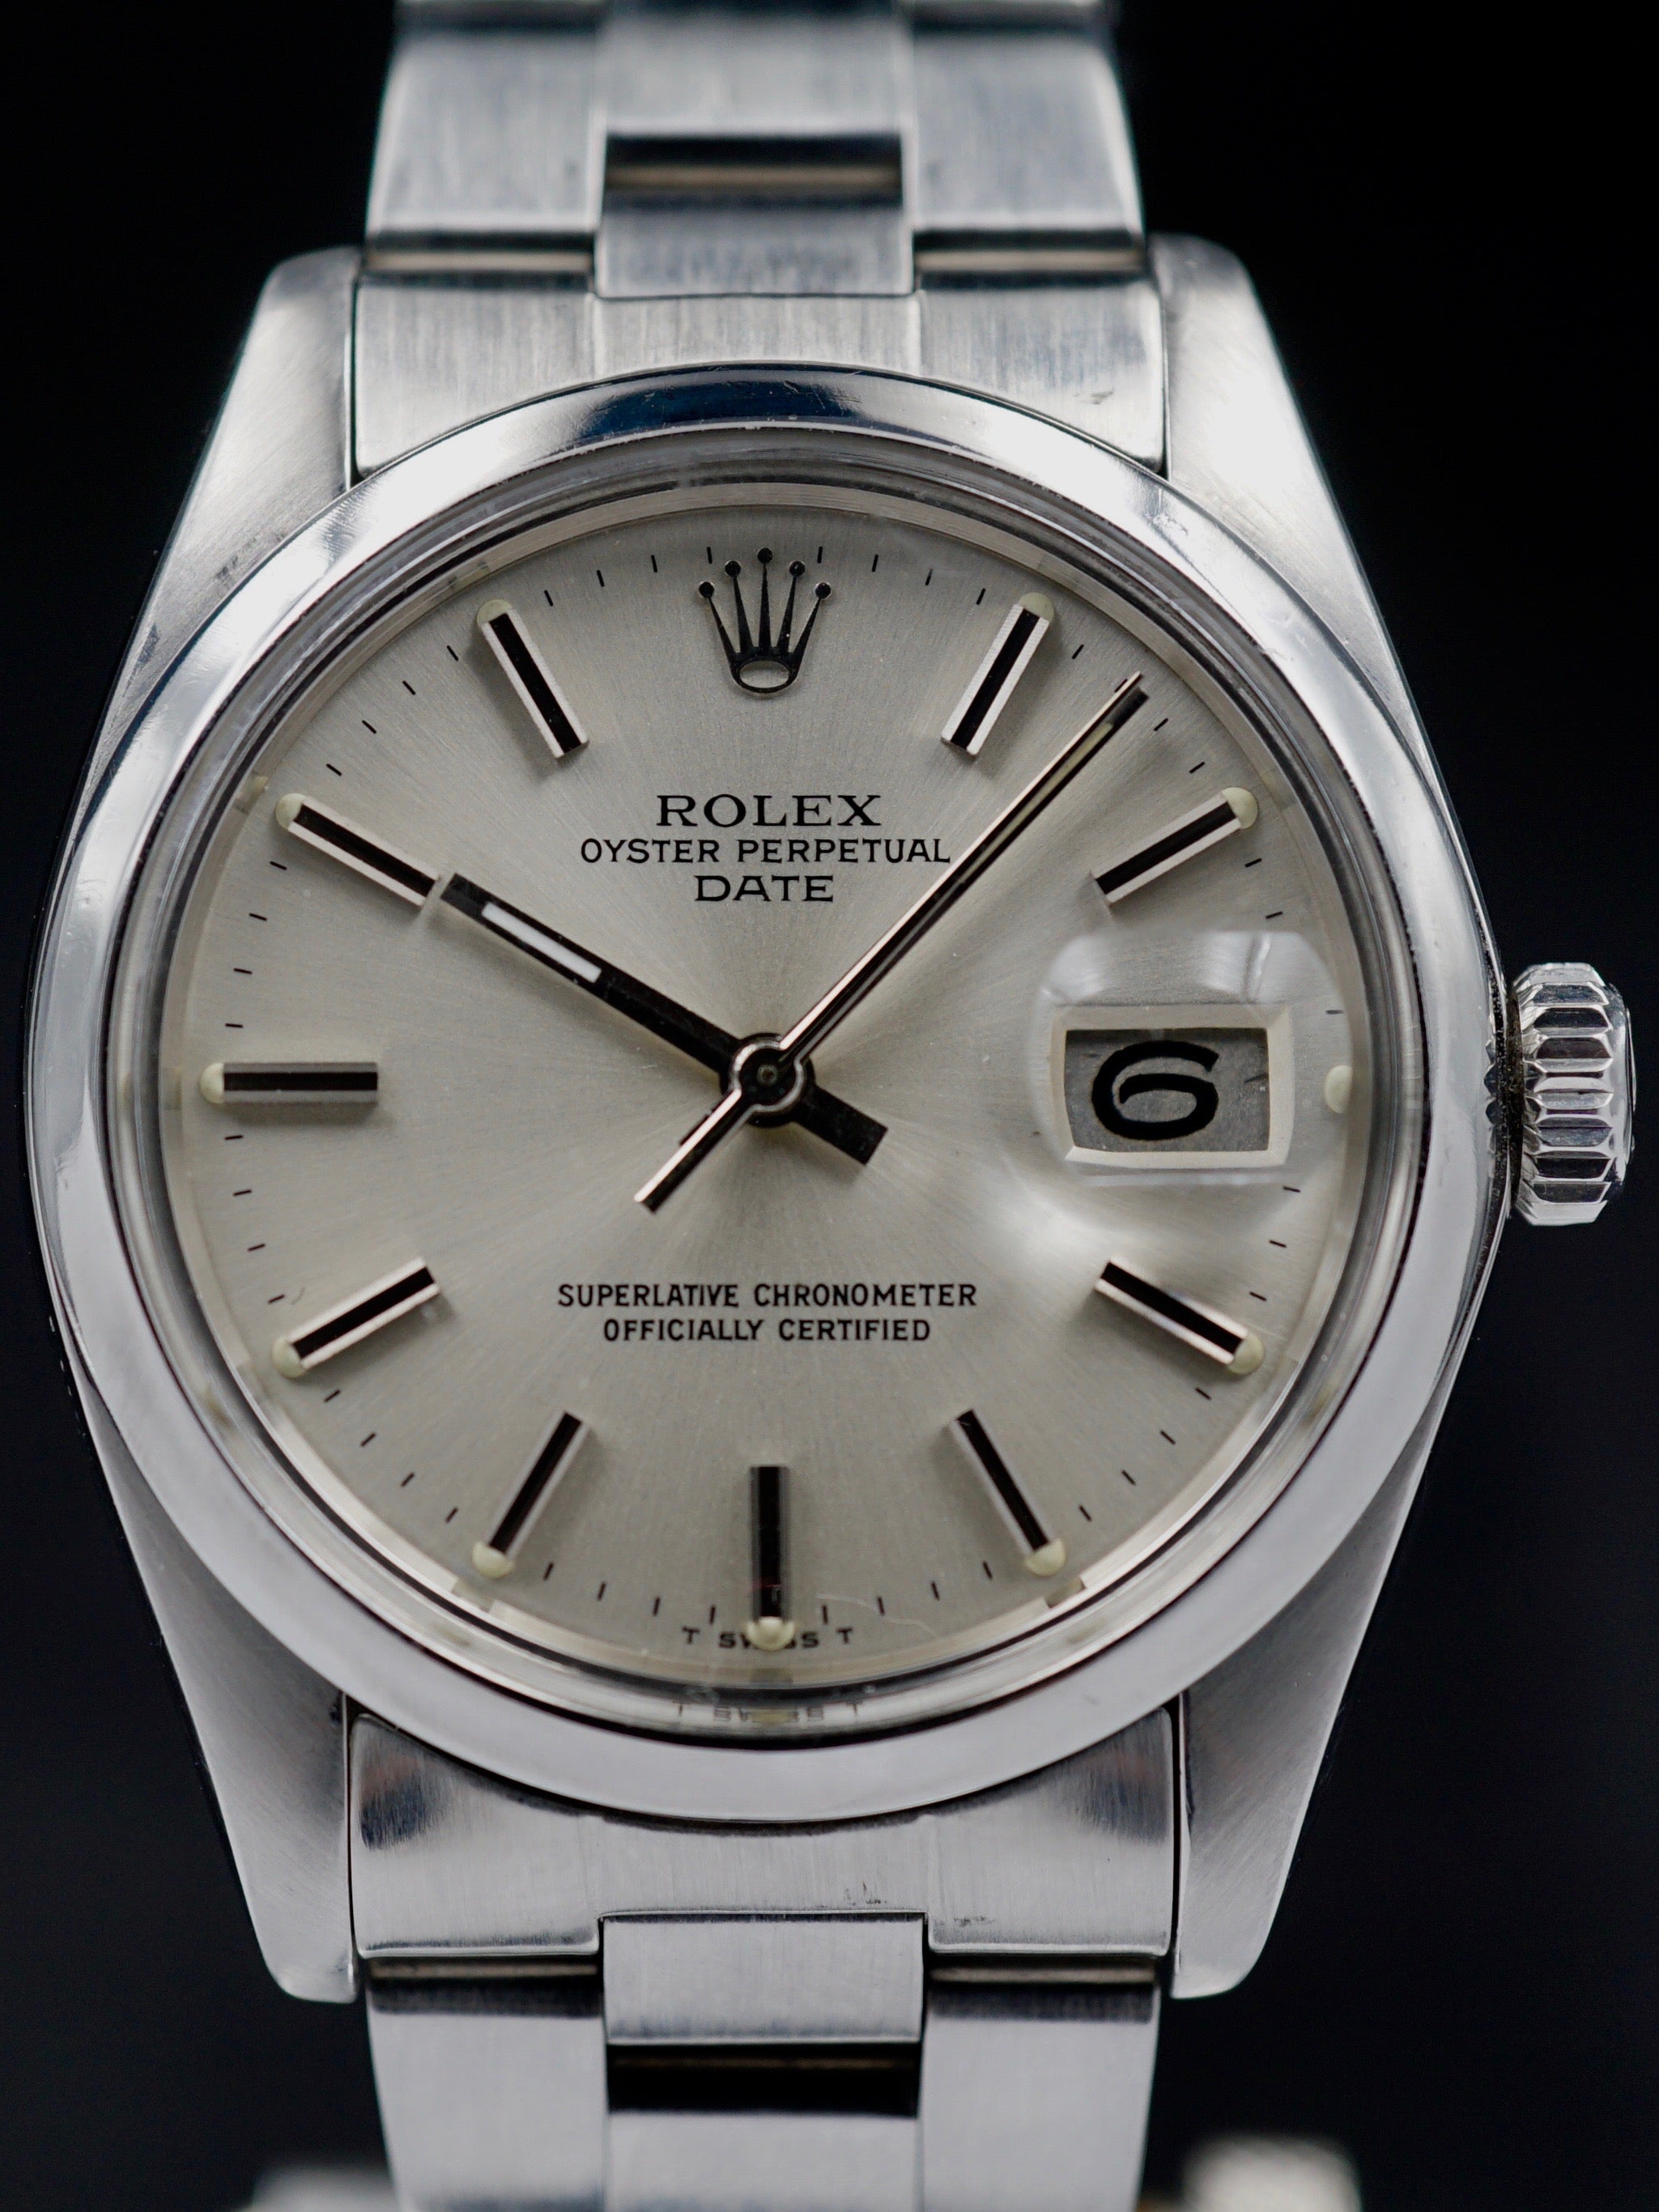 1979 Rolex Oyster Perpetual Date (Ref. 1500)